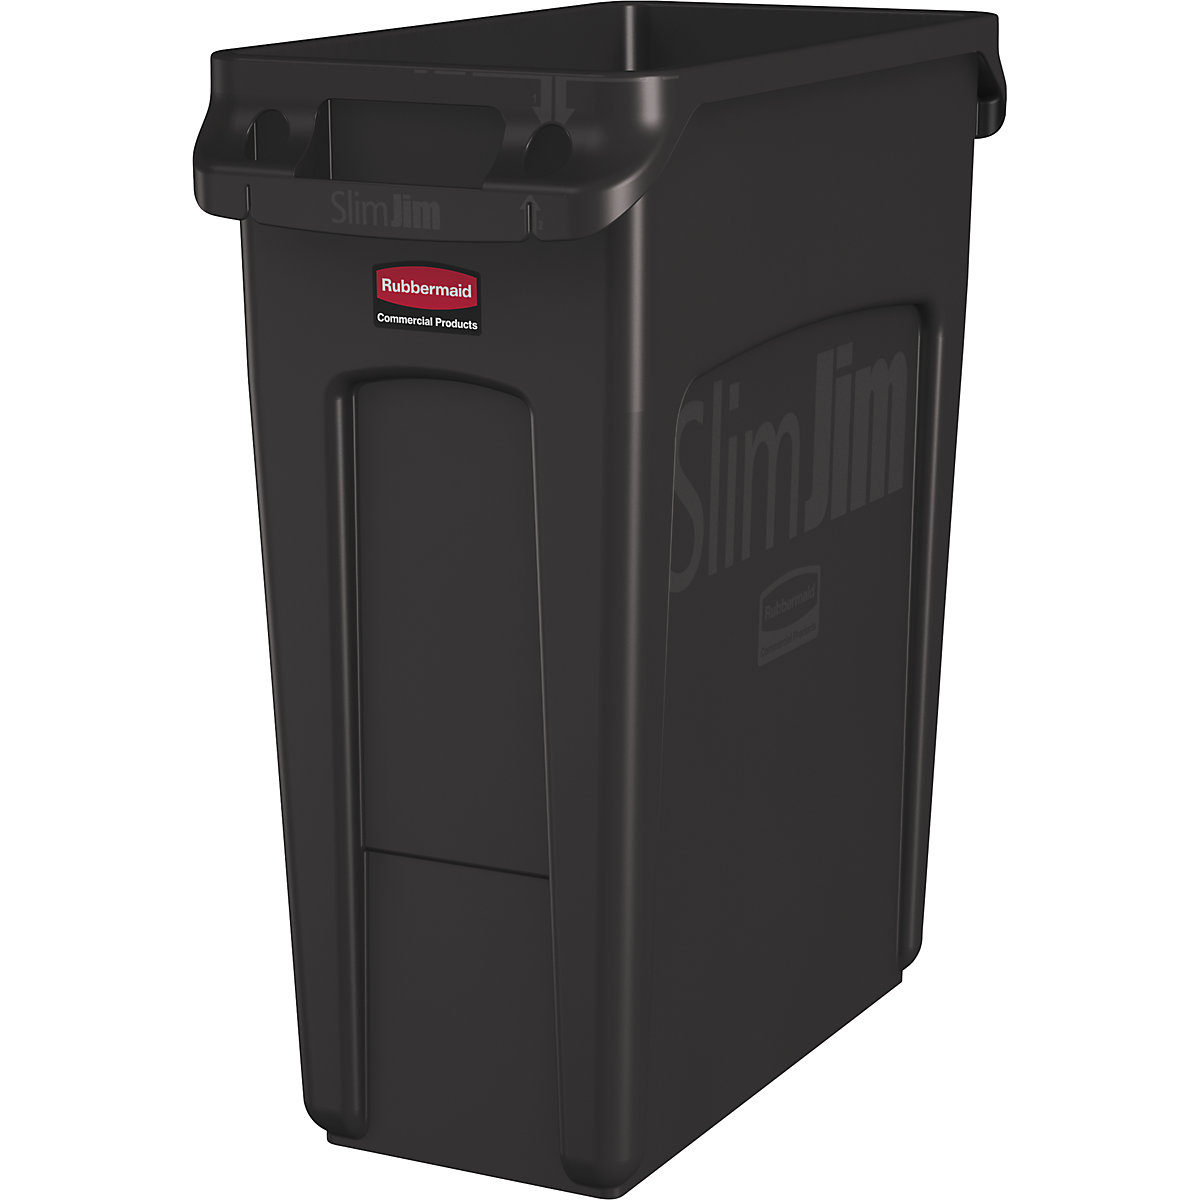 Verzamelaar voor kringloopmateriaal/afvalbak SLIM JIM® – Rubbermaid, volume 60 l, met ventilatiekanalen, bruin, vanaf 10 stuks-12